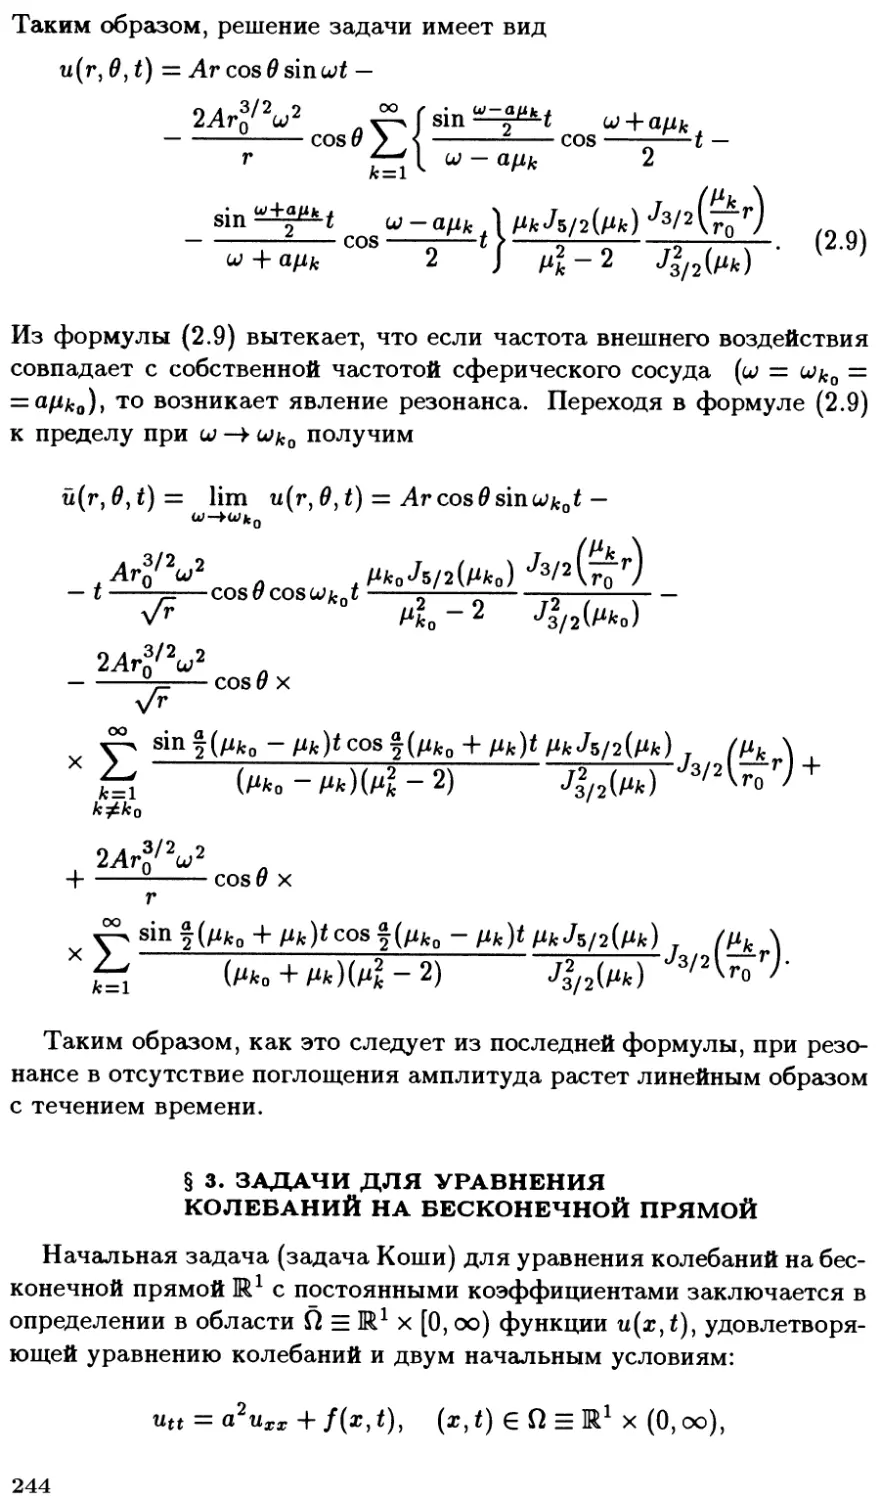 §3. Задачи для уравнения колебаний на бесконечной прямой